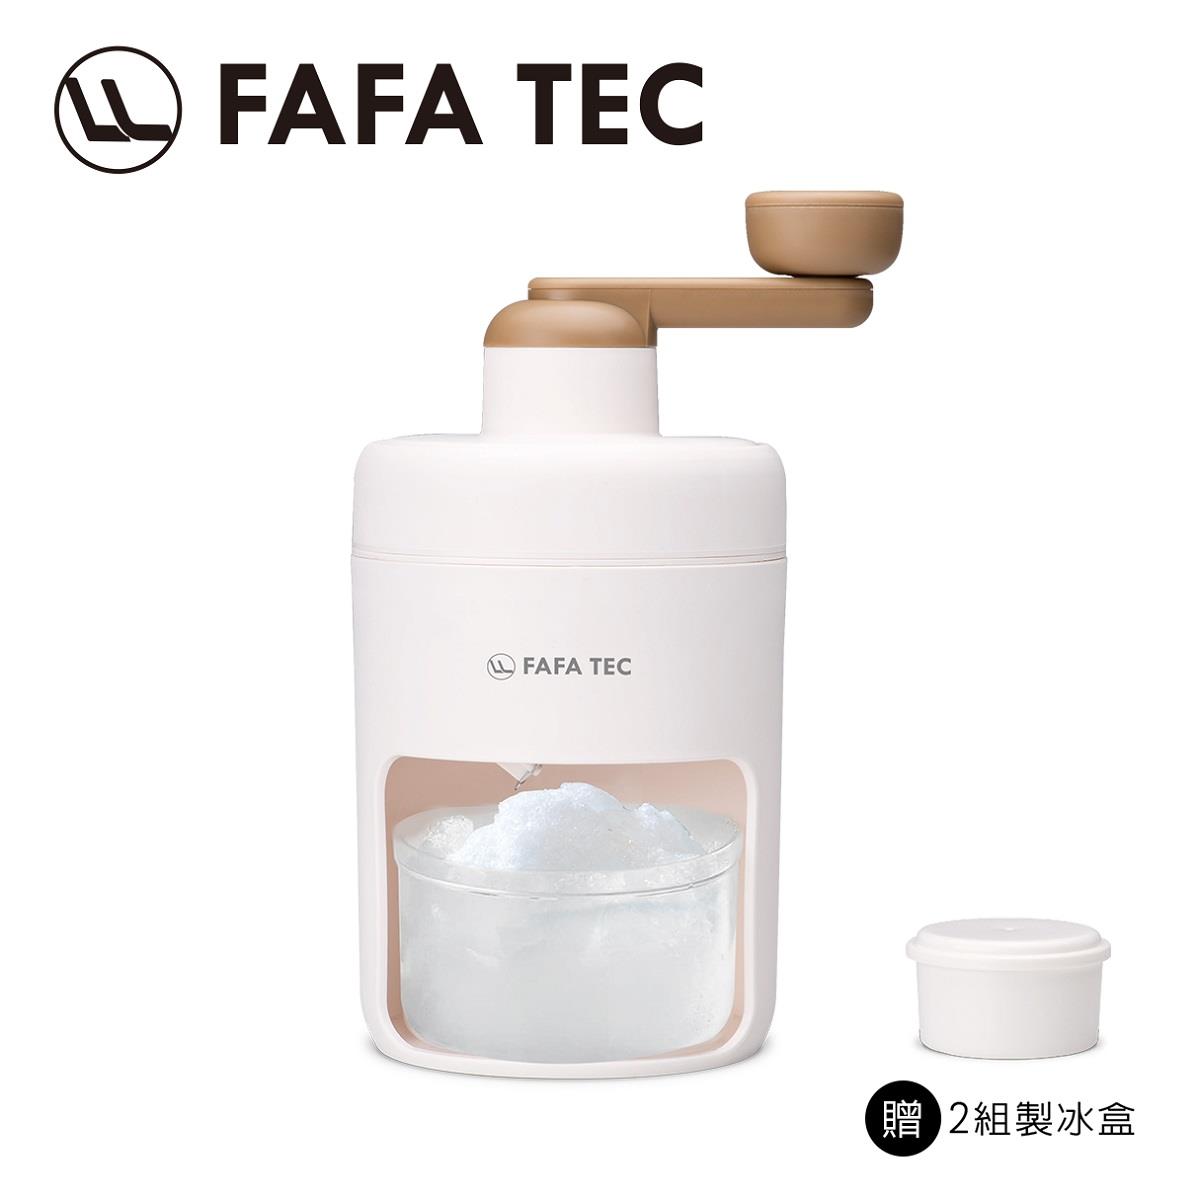 【FAFA TEC】FI1家用手搖刨冰機(1個x1)